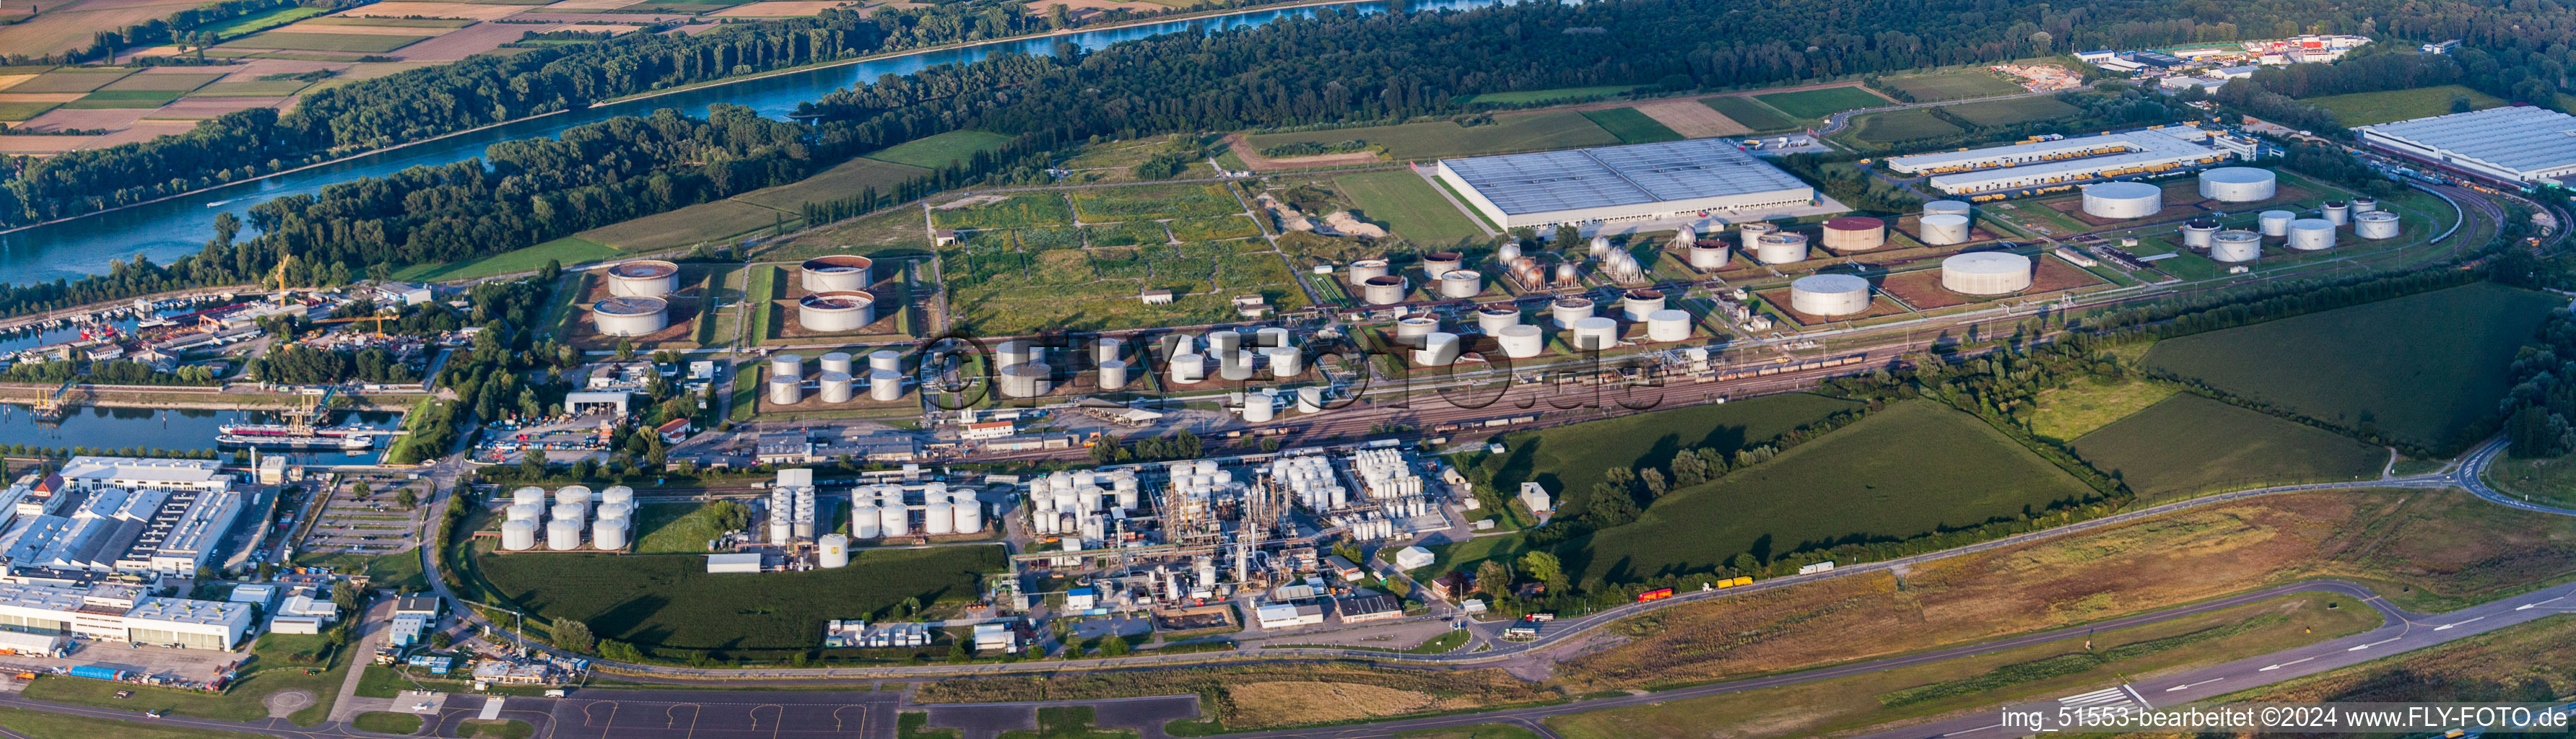 Luftbild von Panorama des Mineralöl - Hochtanklager Tanquid am Flugplatz in Speyer im Bundesland Rheinland-Pfalz, Deutschland